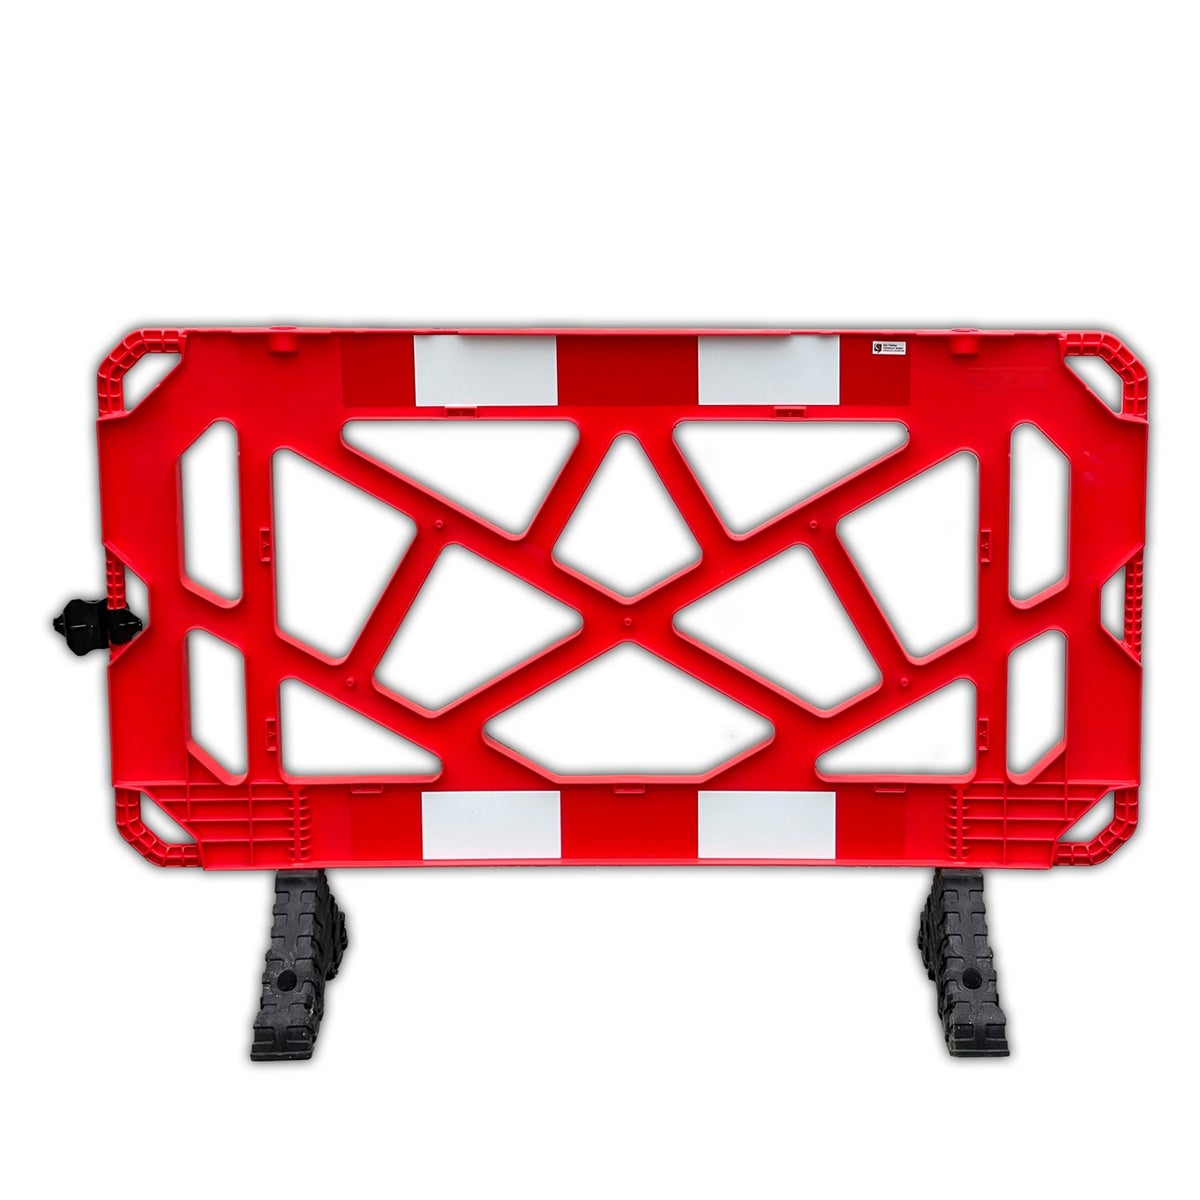 UvV Absperrgitter, Schachtabsperrung rot mit Reflexfolie 1500x1000mm PVC mit drehbaren Füßen / 1 Stück / rotes Gitter